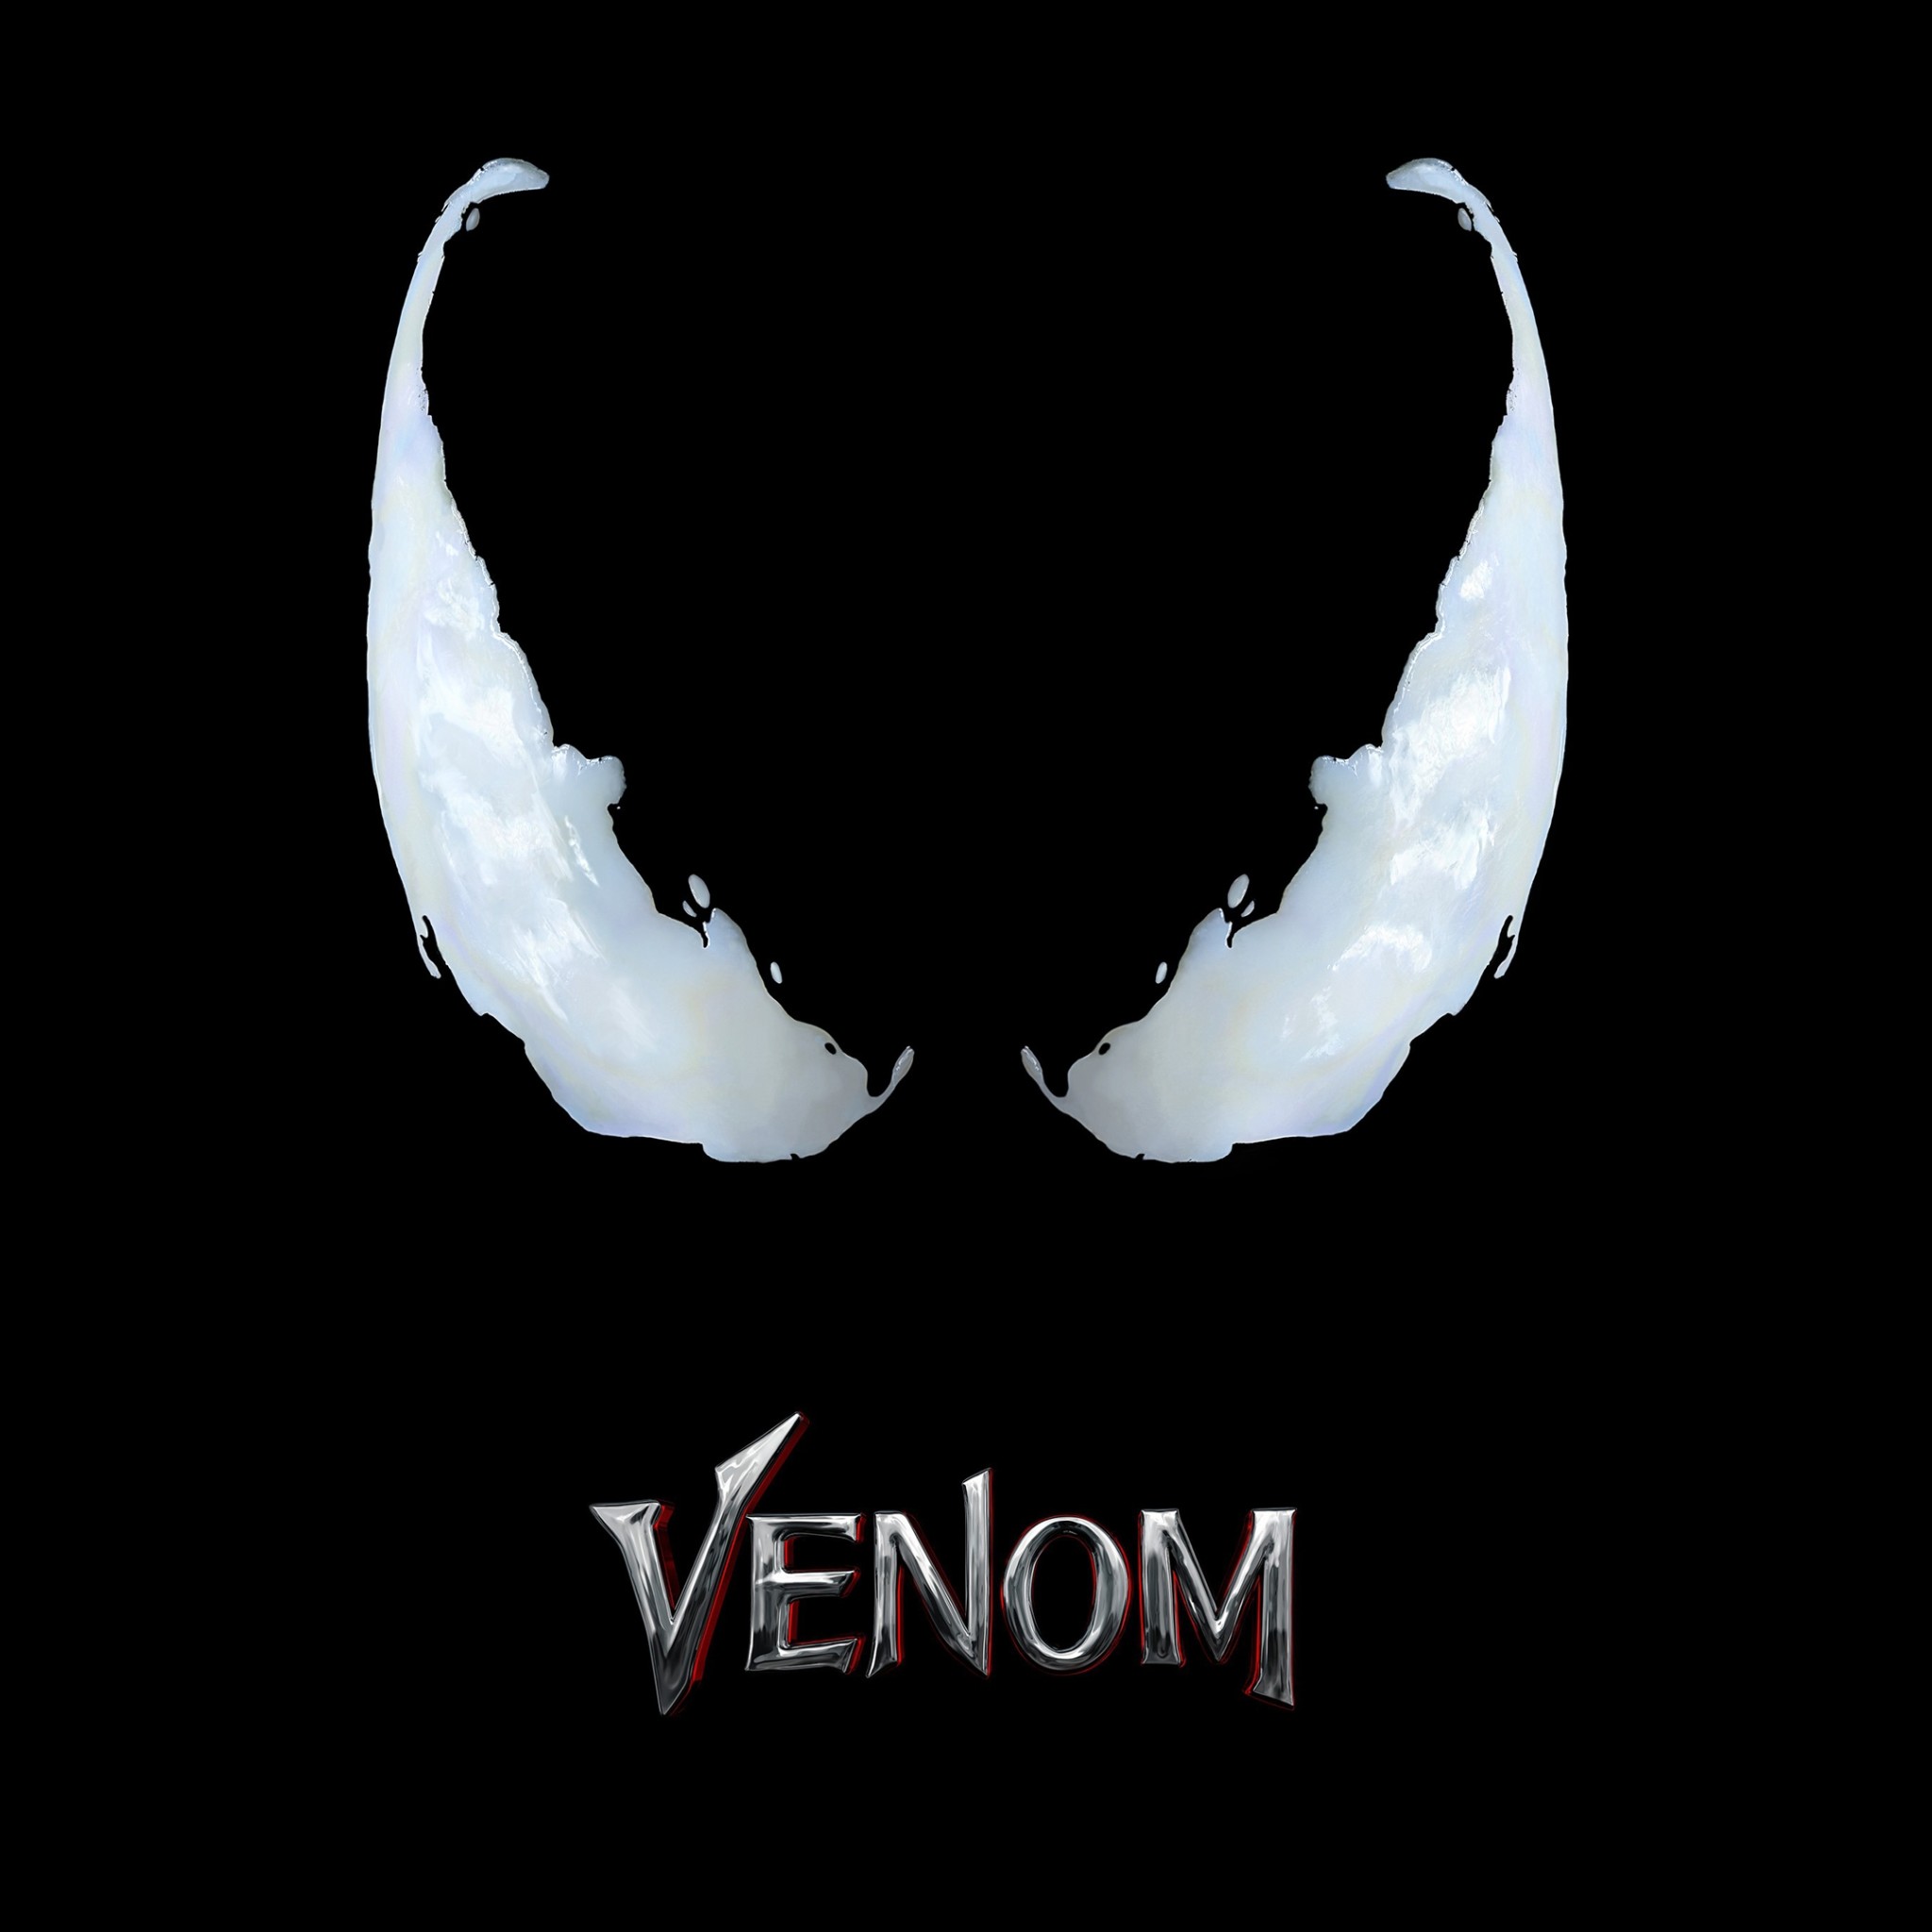 venom logo wallpaper,text,wing,logo,lip,font